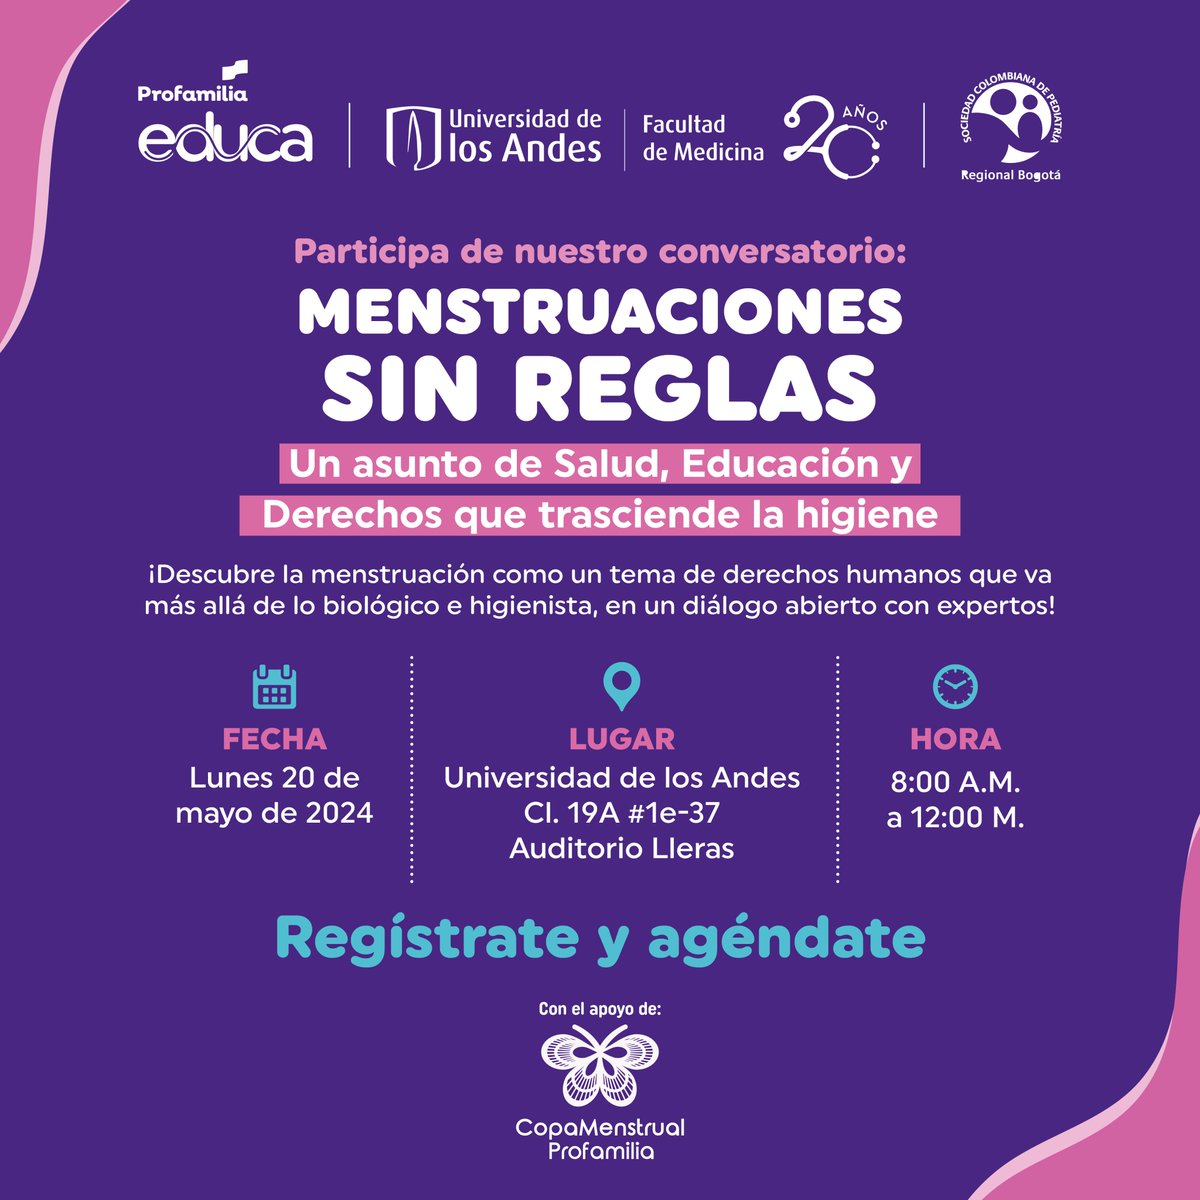 💜Únete a nuestro conversatorio sobre educación menstrual 💜 Estaremos el próximo lunes 20 de mayo en la @Uniandes en el Auditorio Lleras, para un fascinante conversatorio sobre: 'Menstruaciones Sin Reglas: Un asunto de Salud, Educación, y Derechos que trasciende la higiene'.